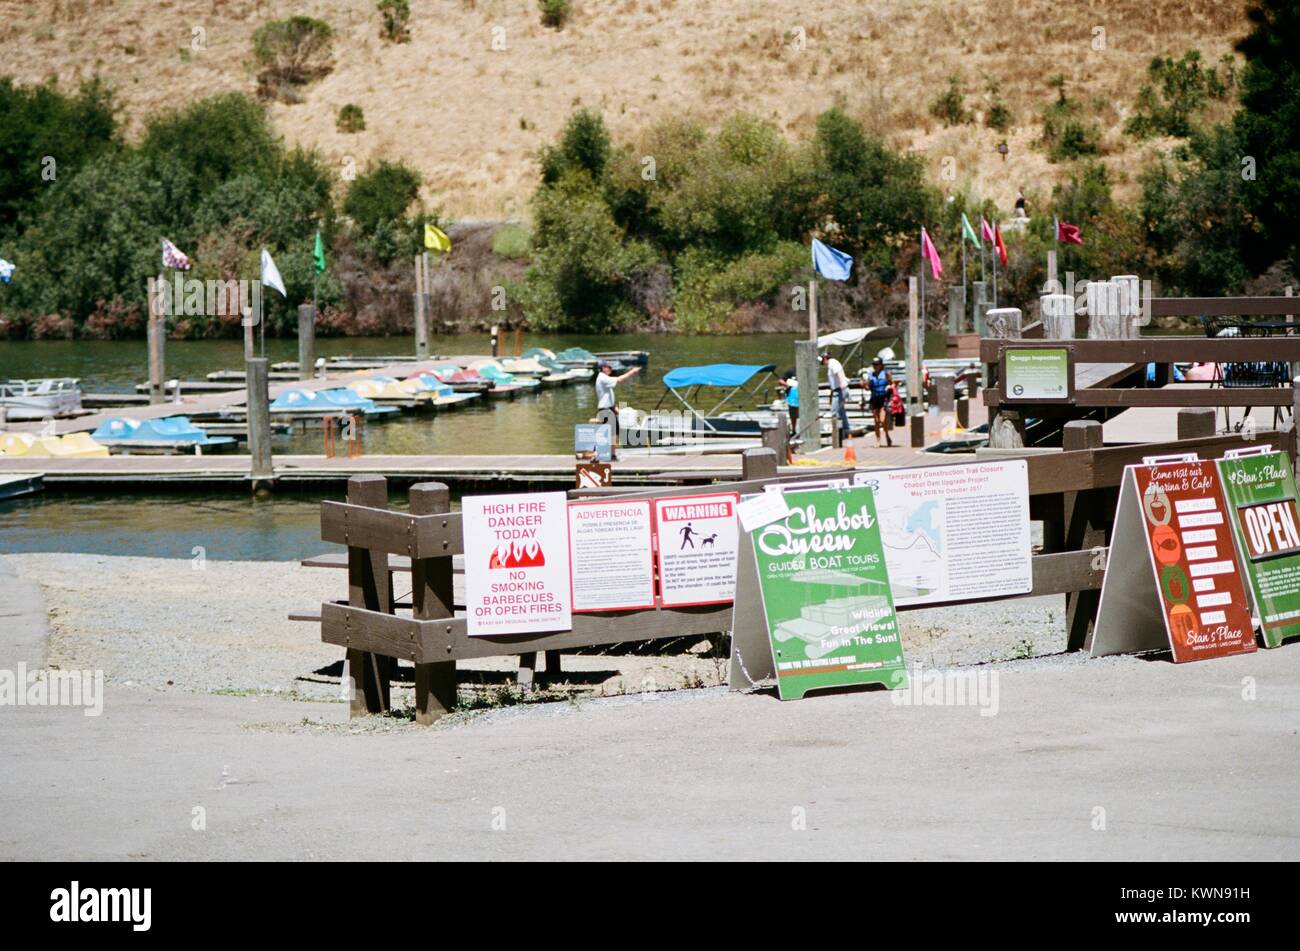 Signage, einschließlich einem Brand Warnschild, an der Chabot Marina auf See Chabot, East Bay Regional Park in der San Francisco Bay Area Stadt Castro Valley, Kalifornien, 16. Juli 2017. Stockfoto